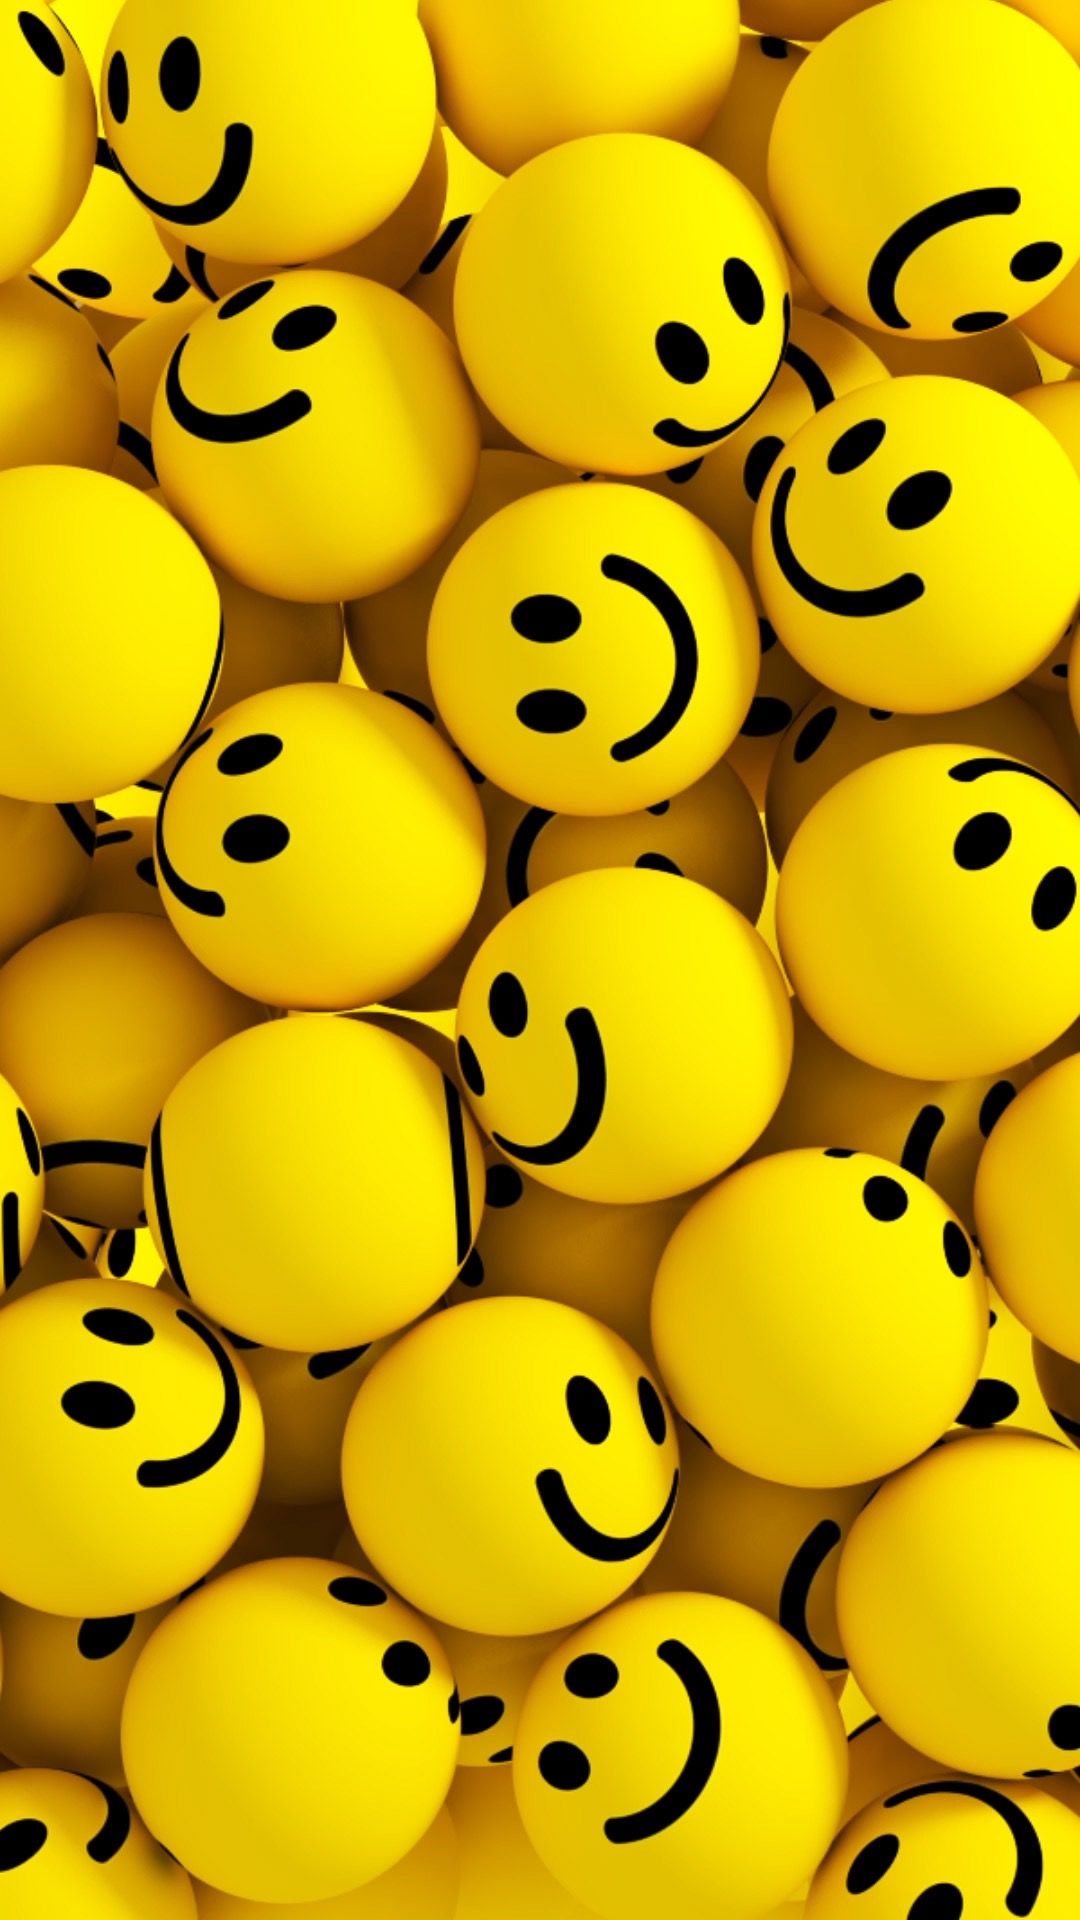 Laugh Emoji Wallpapers - Wallpaper Cave